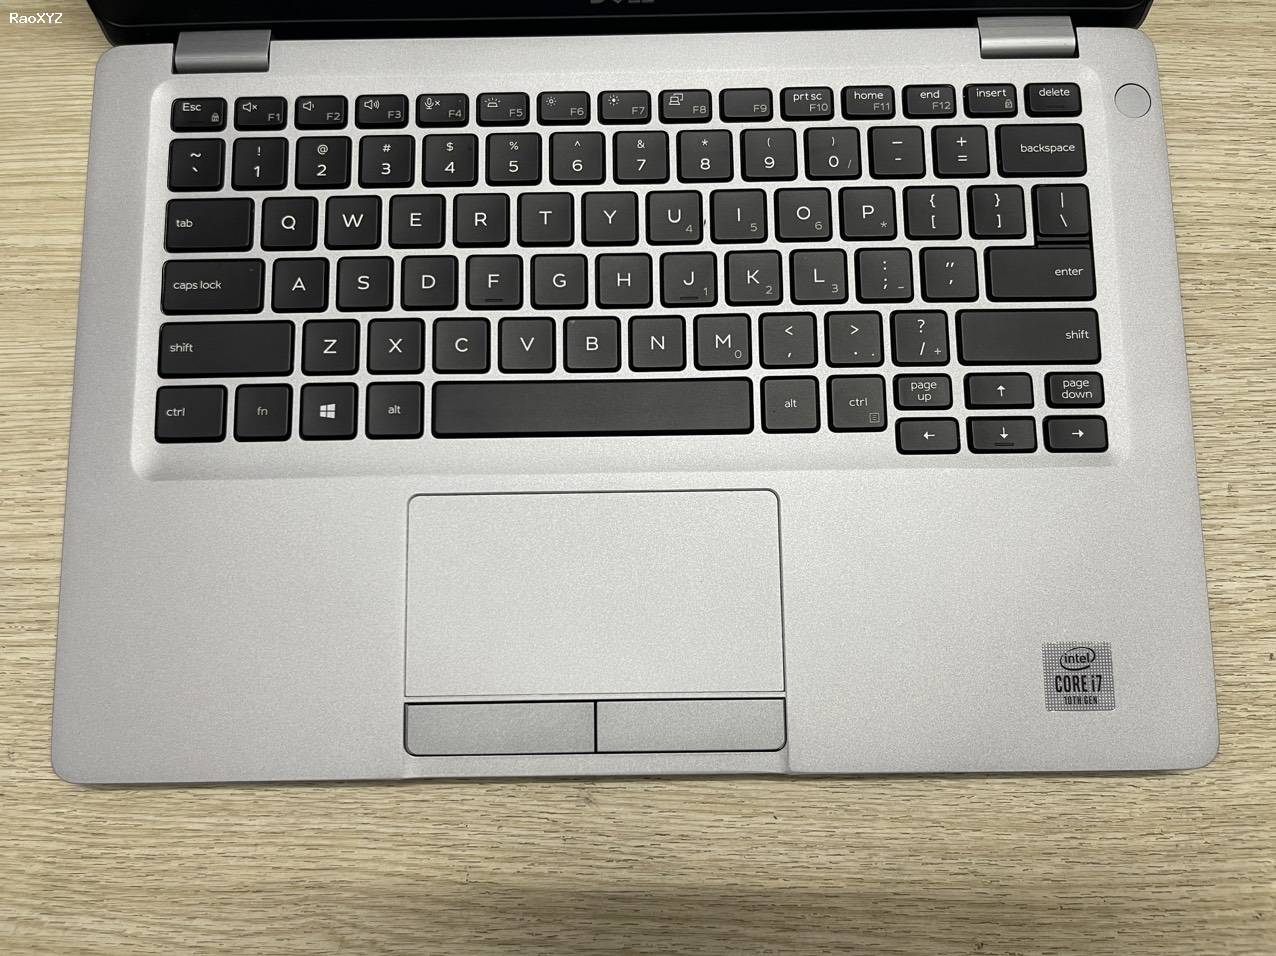 Laptop Dell chính hãng giá rẻ tại Lê Nguyễn PC, cấu hình i5, i7, laptop đồ họa